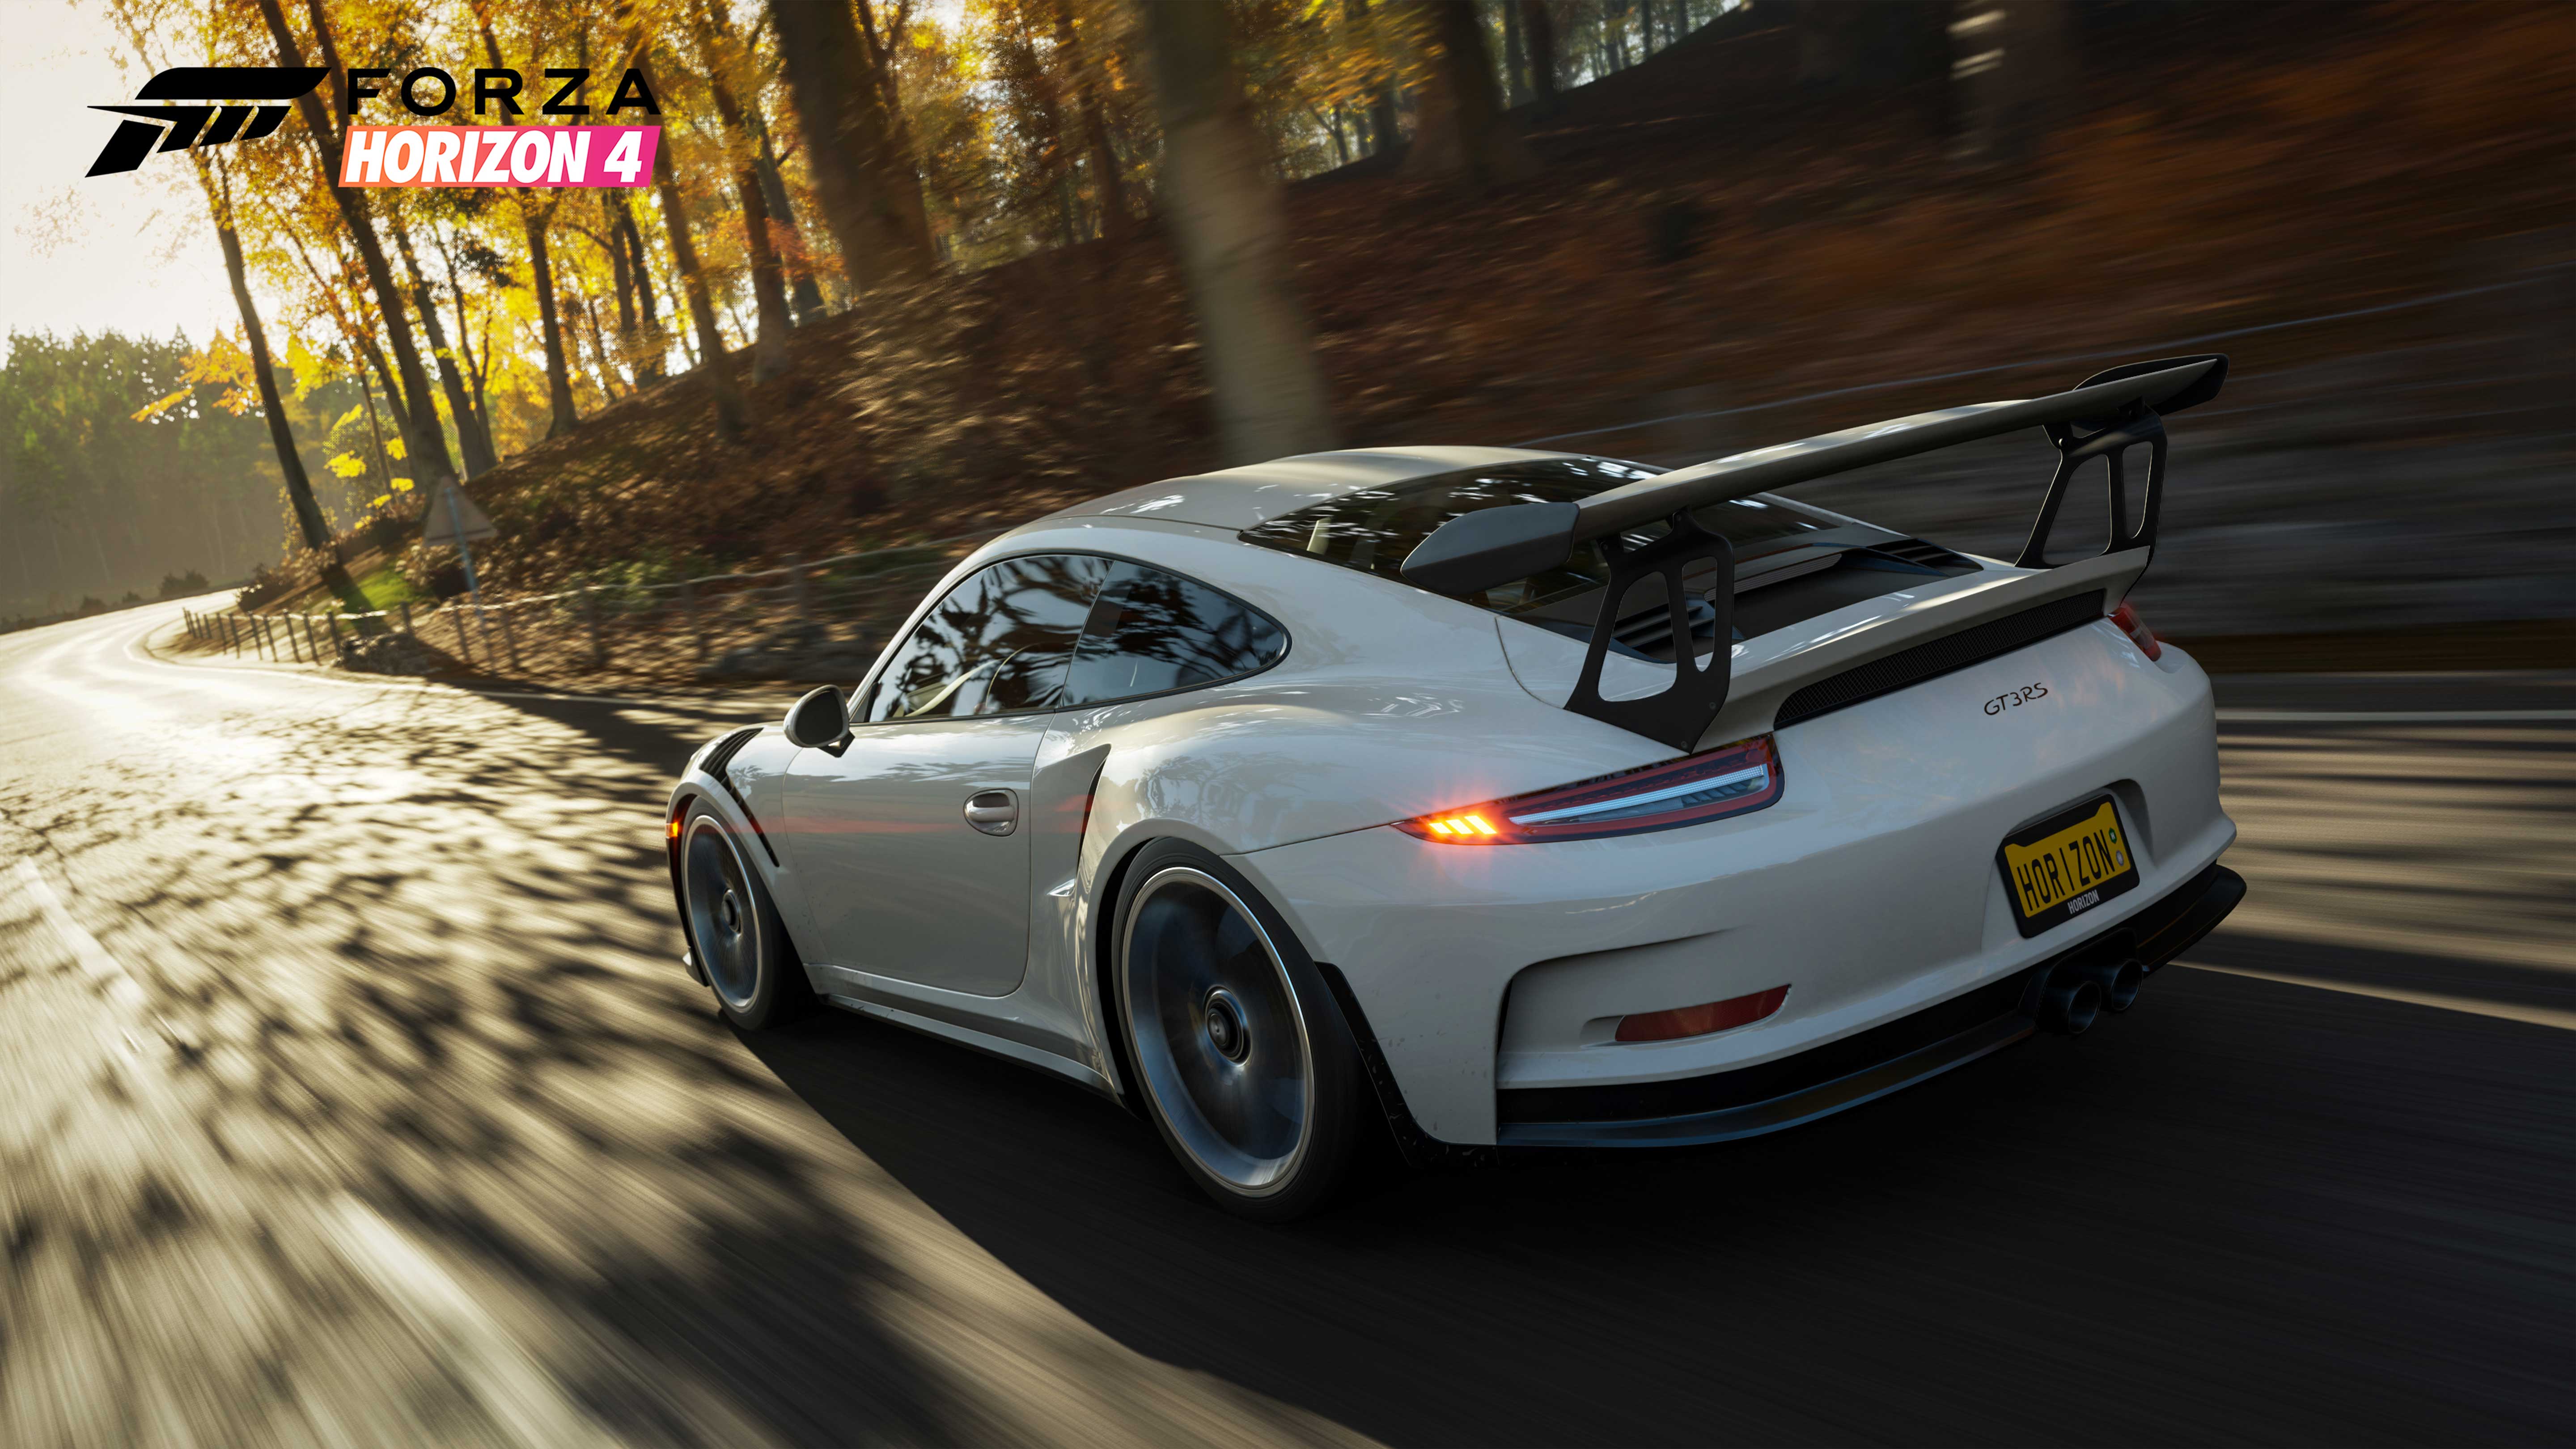 Wallpapers Porsche Forza Horizon 4 2018 Games on the desktop